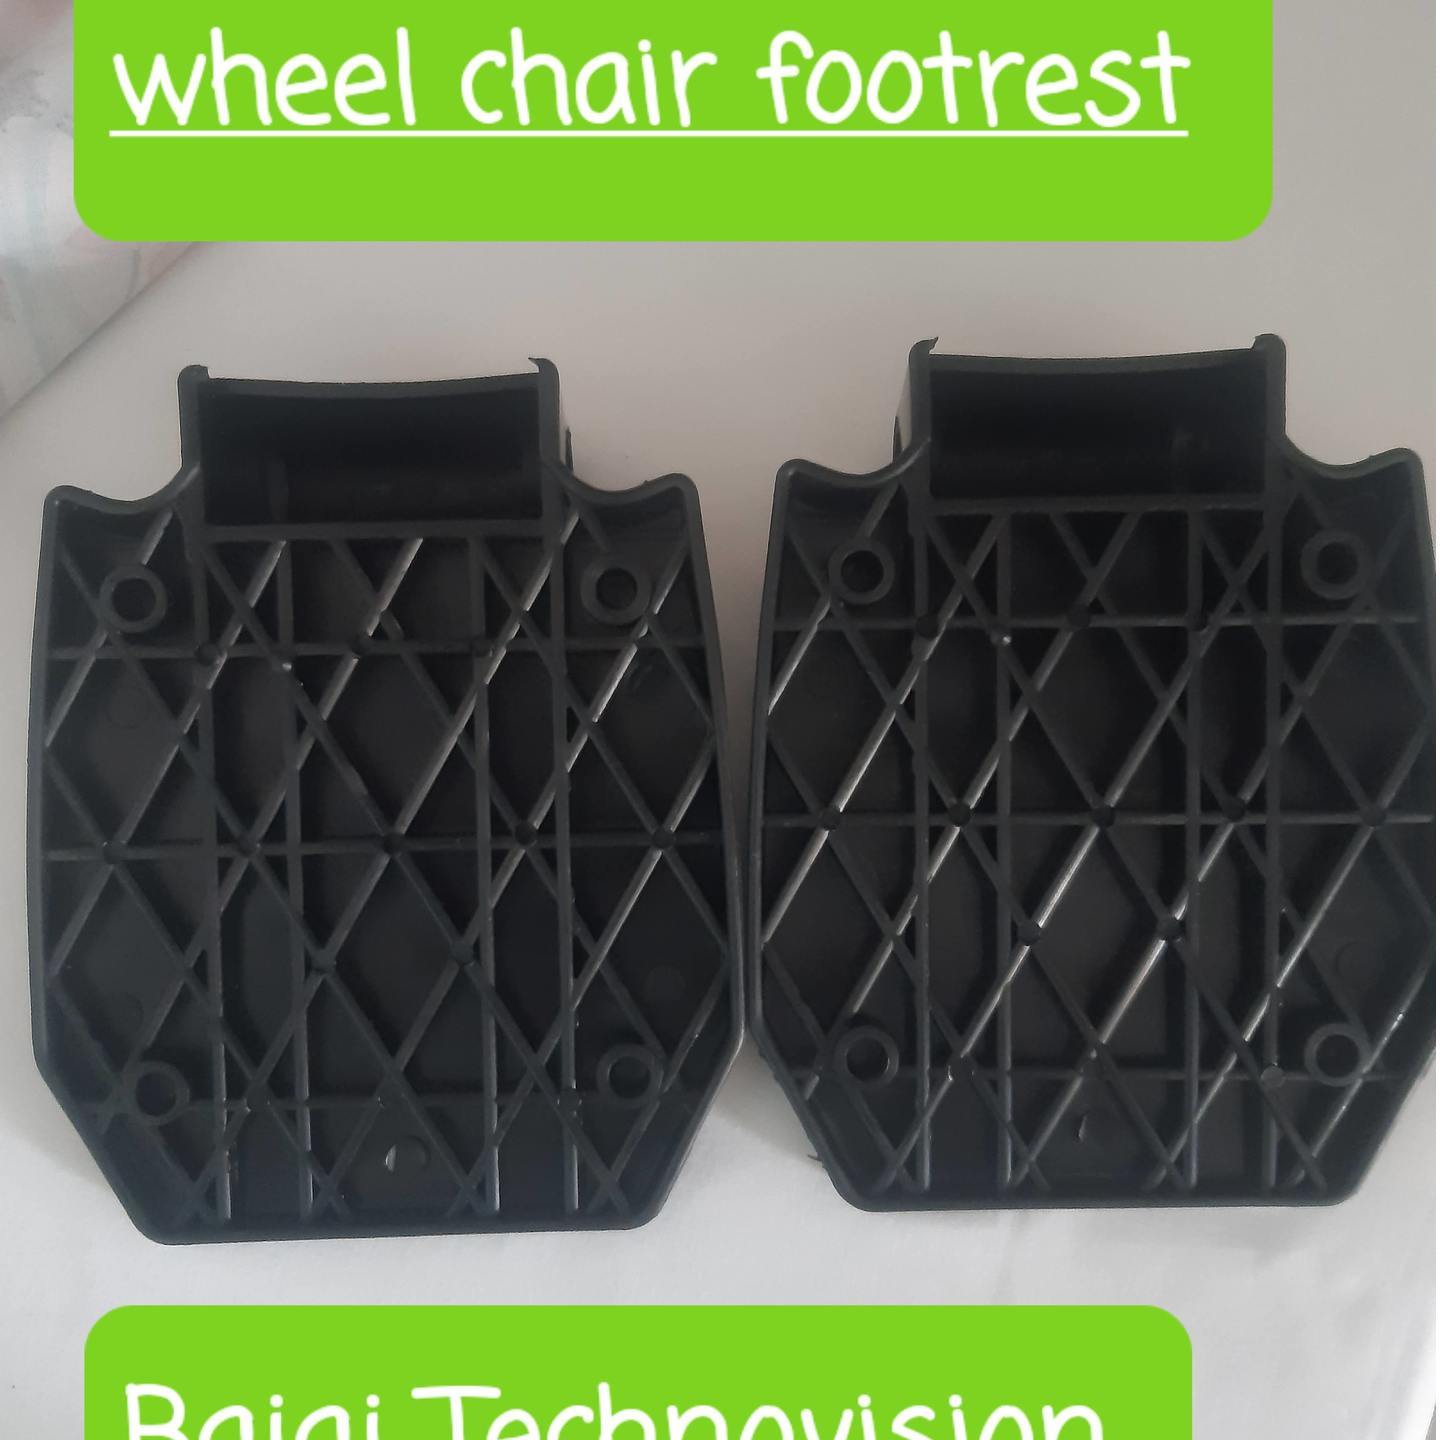 Footrest Wheel Chair